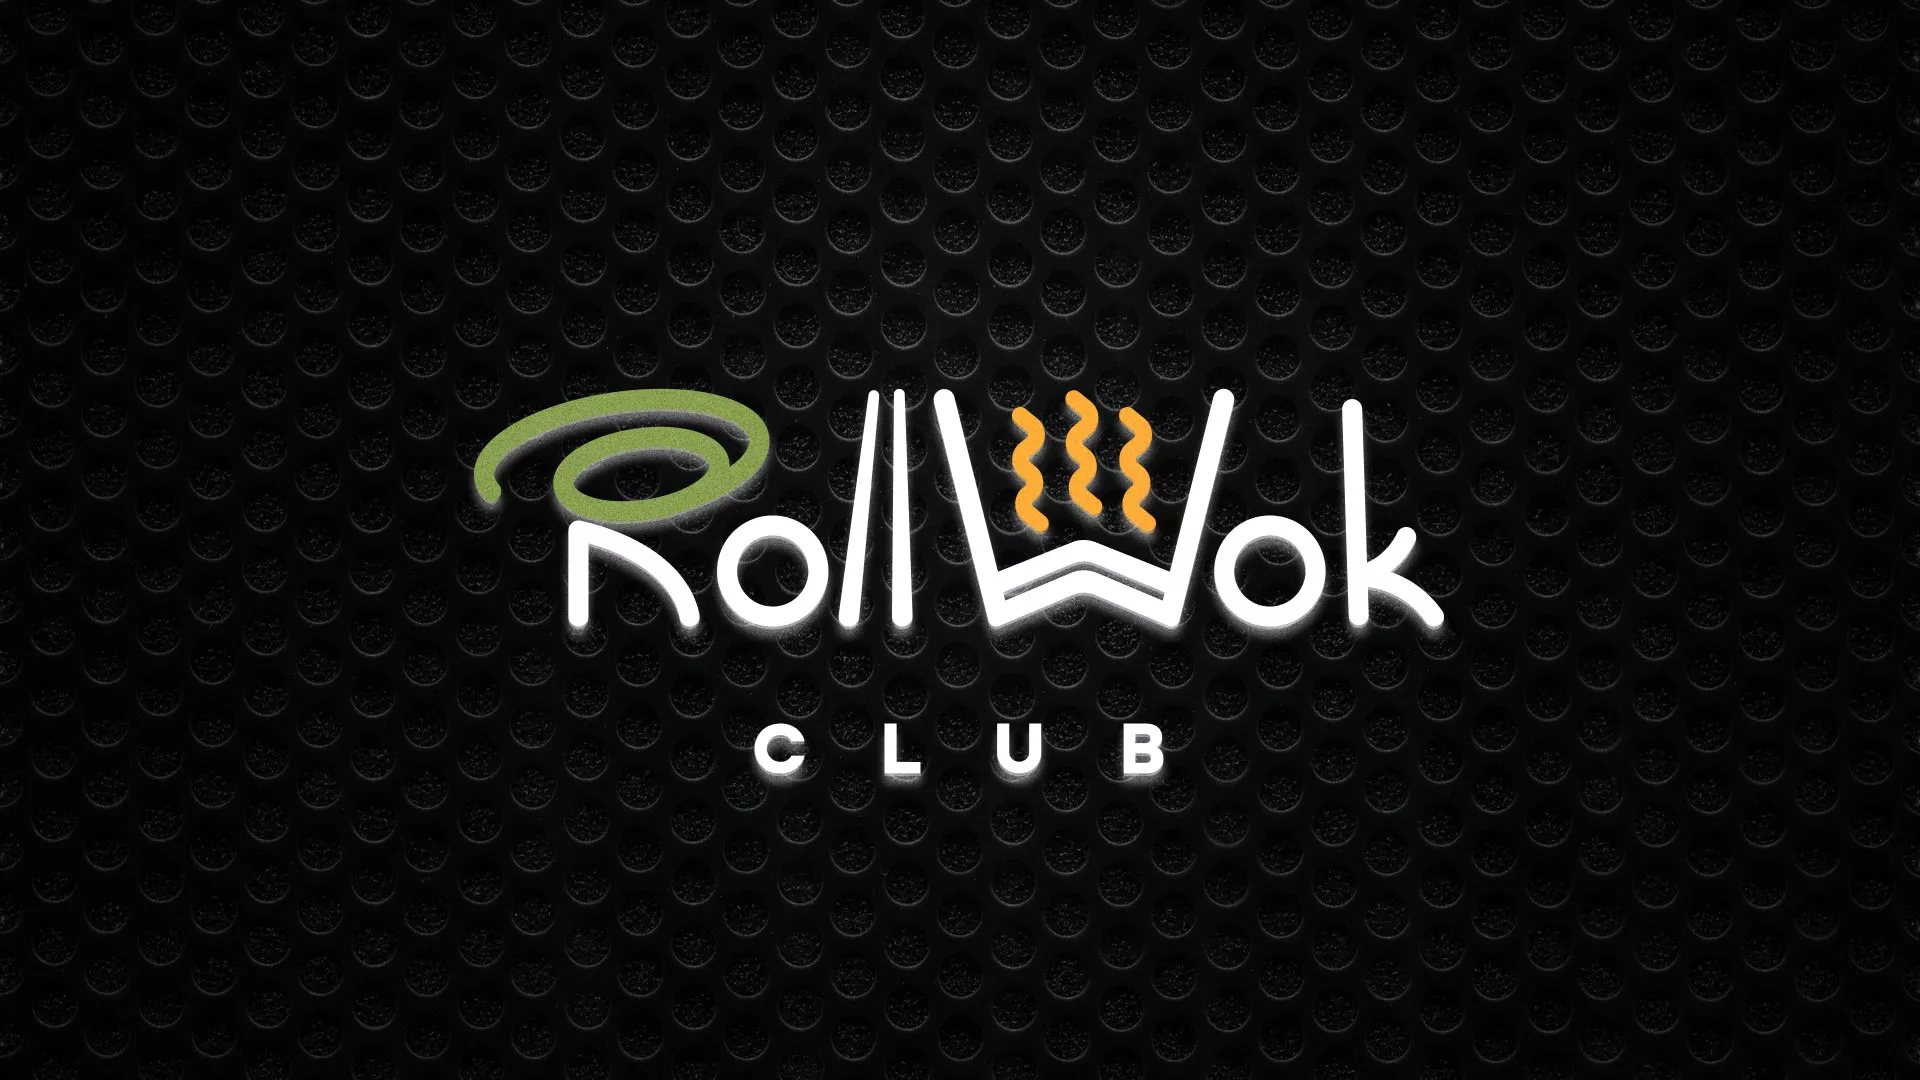 Брендирование торговых точек суши-бара «Roll Wok Club» в Таре